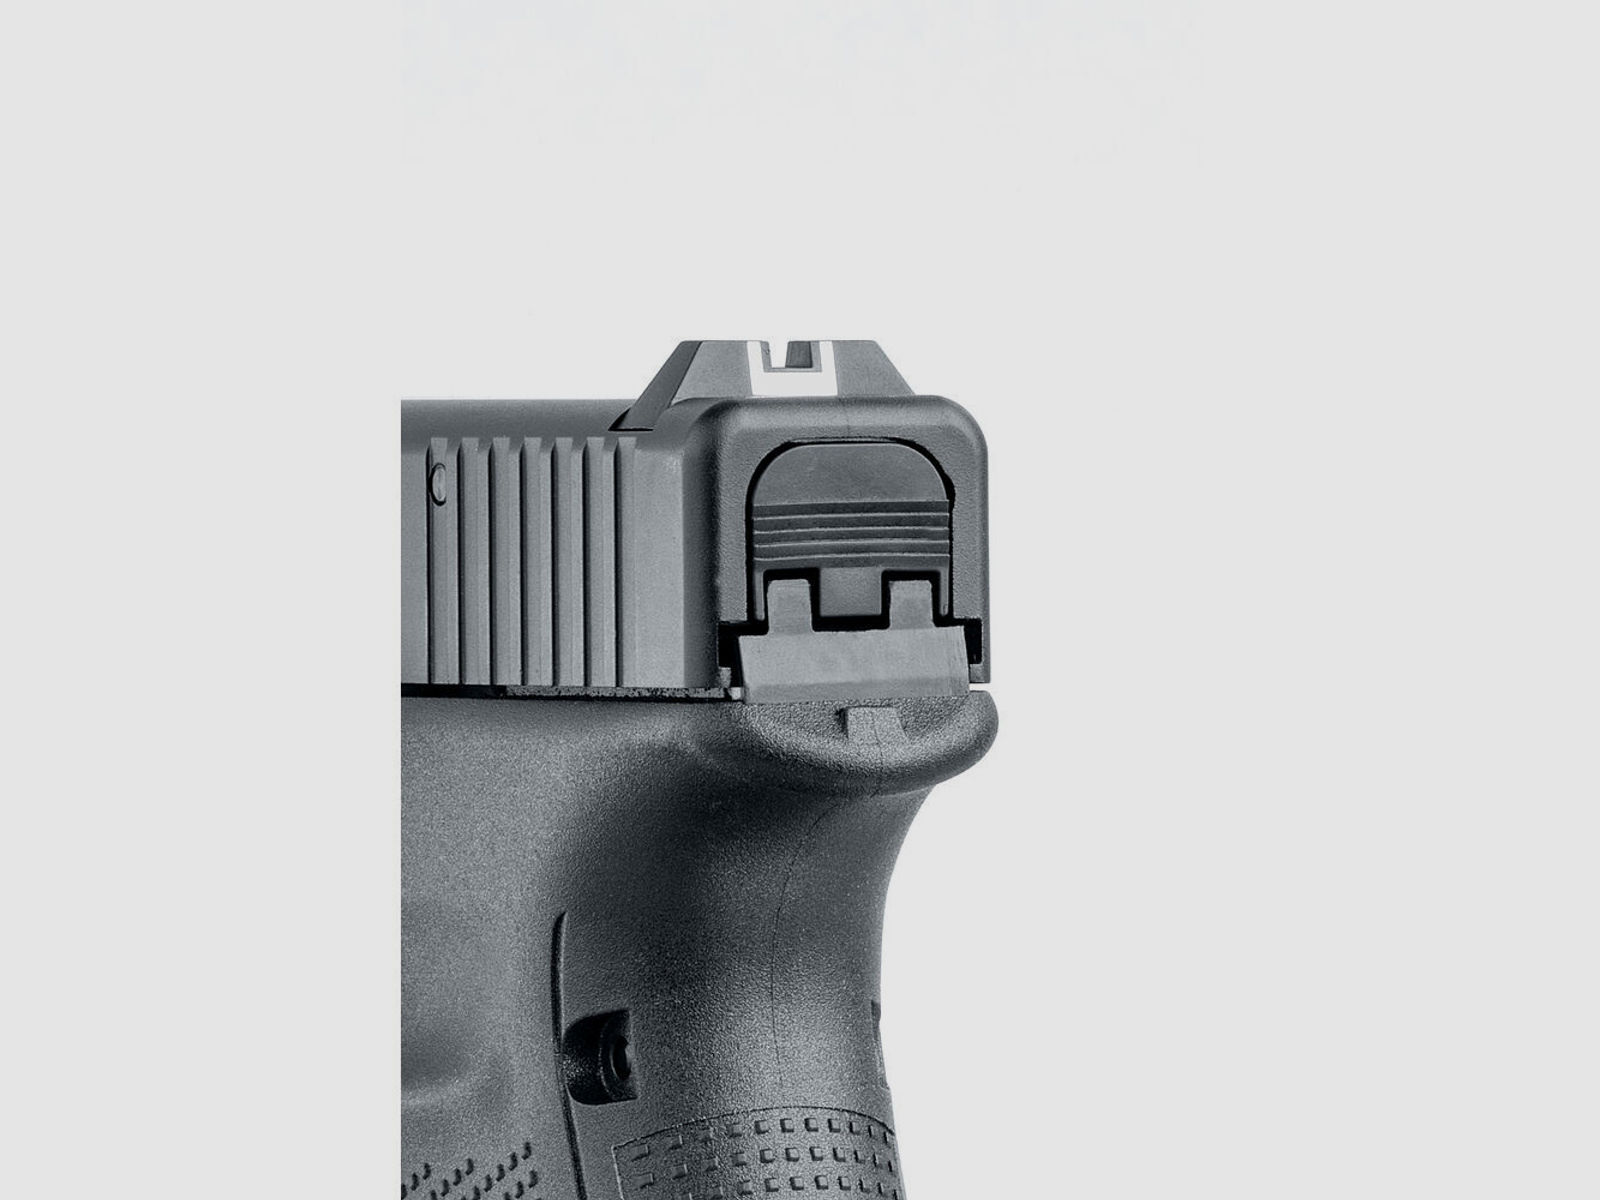 Glock 17 Gen5 Schreckschusspistole + Cytac Holster + Ersatzmagazin